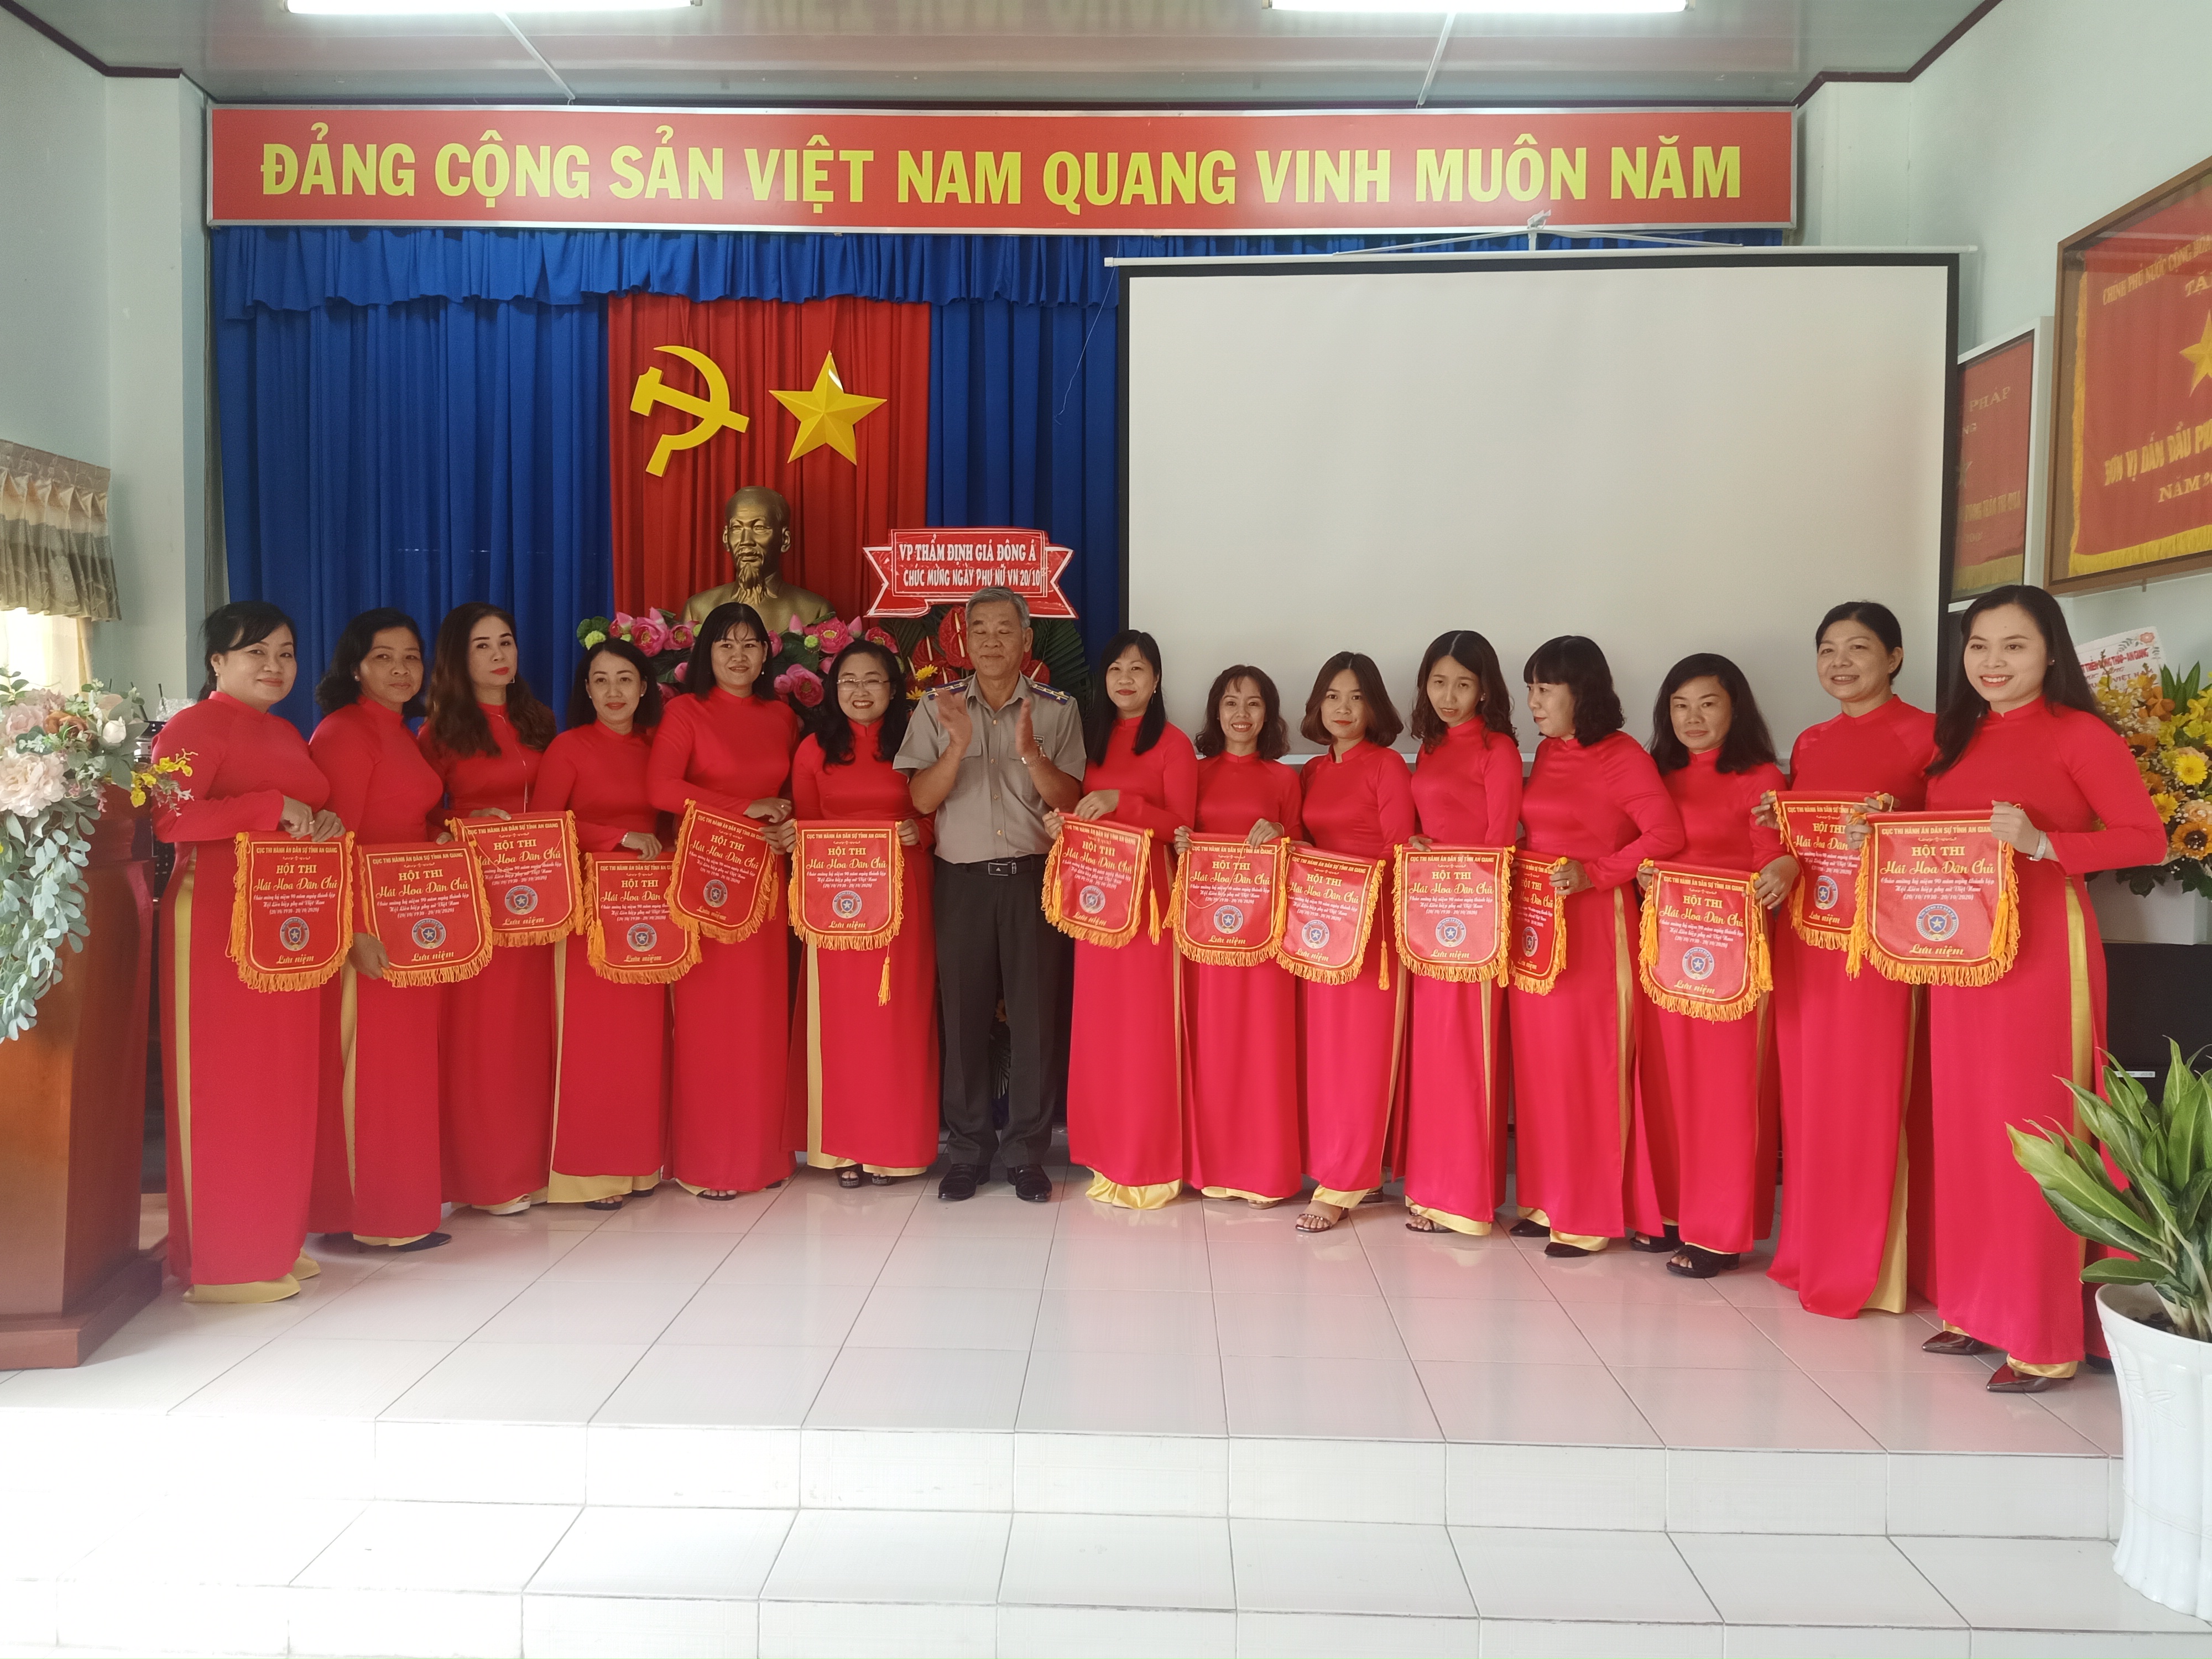 Cục Thi hành án dân sự tỉnh An Giang tổ chức Họp mặt kỷ niệm ngày Phụ nữ Việt Nam 20/10.